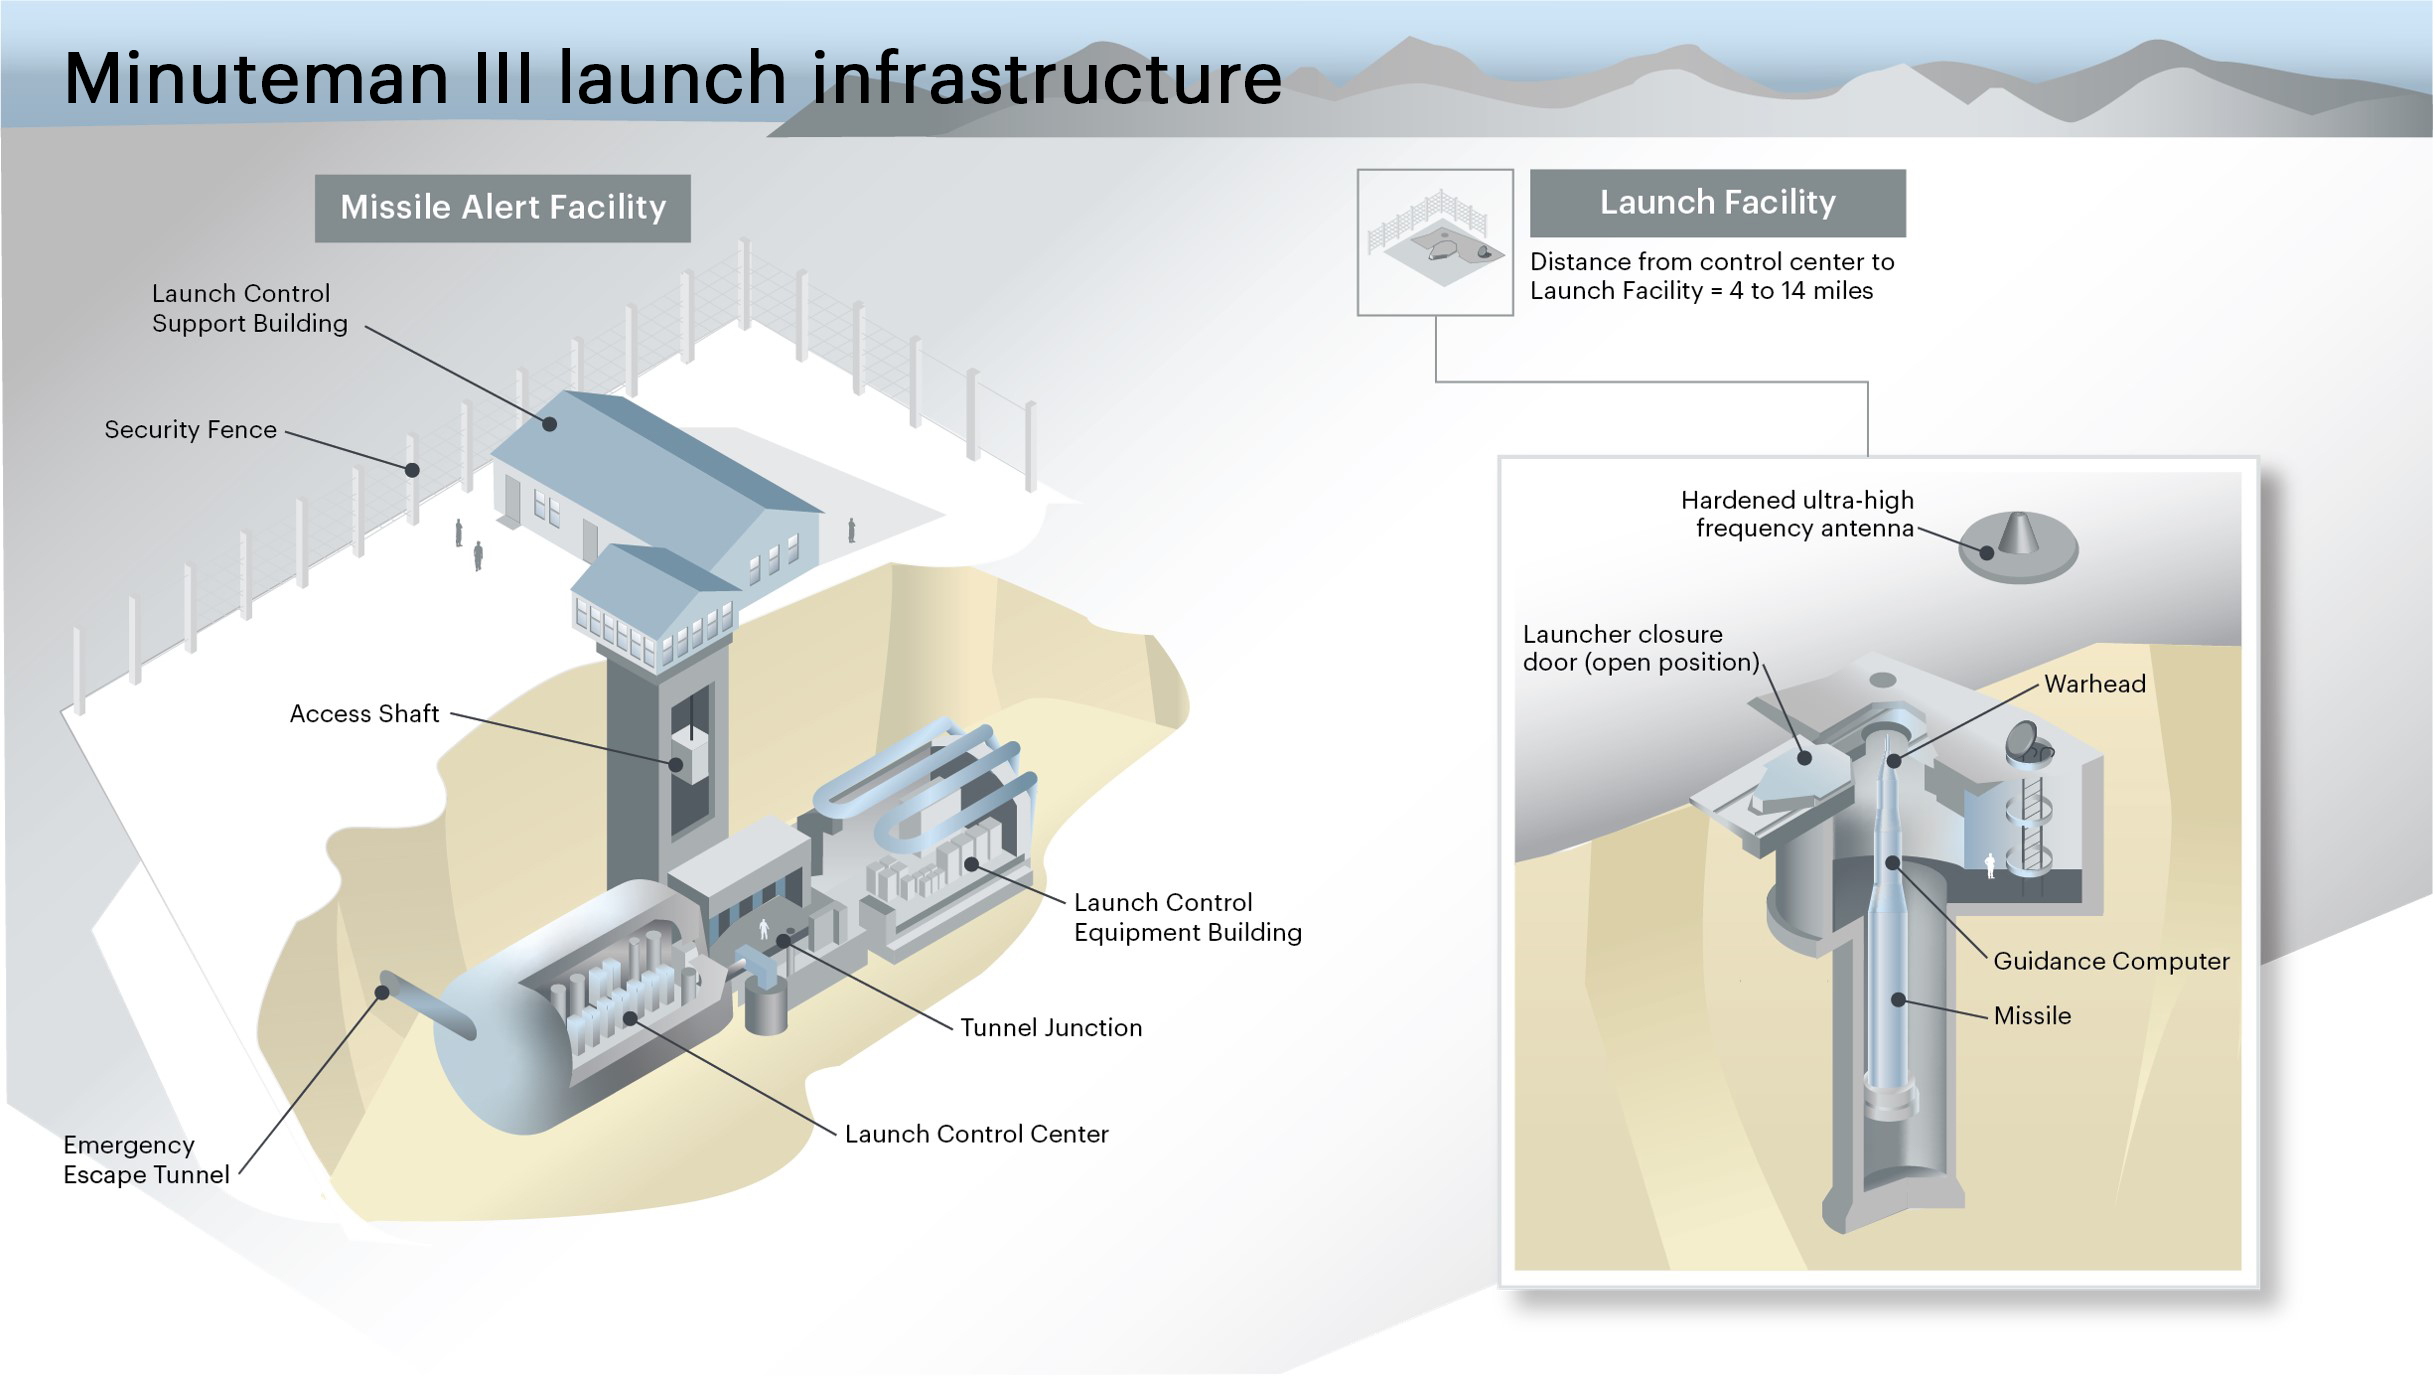 Digital rendering of the Minuteman III launch infrastructure